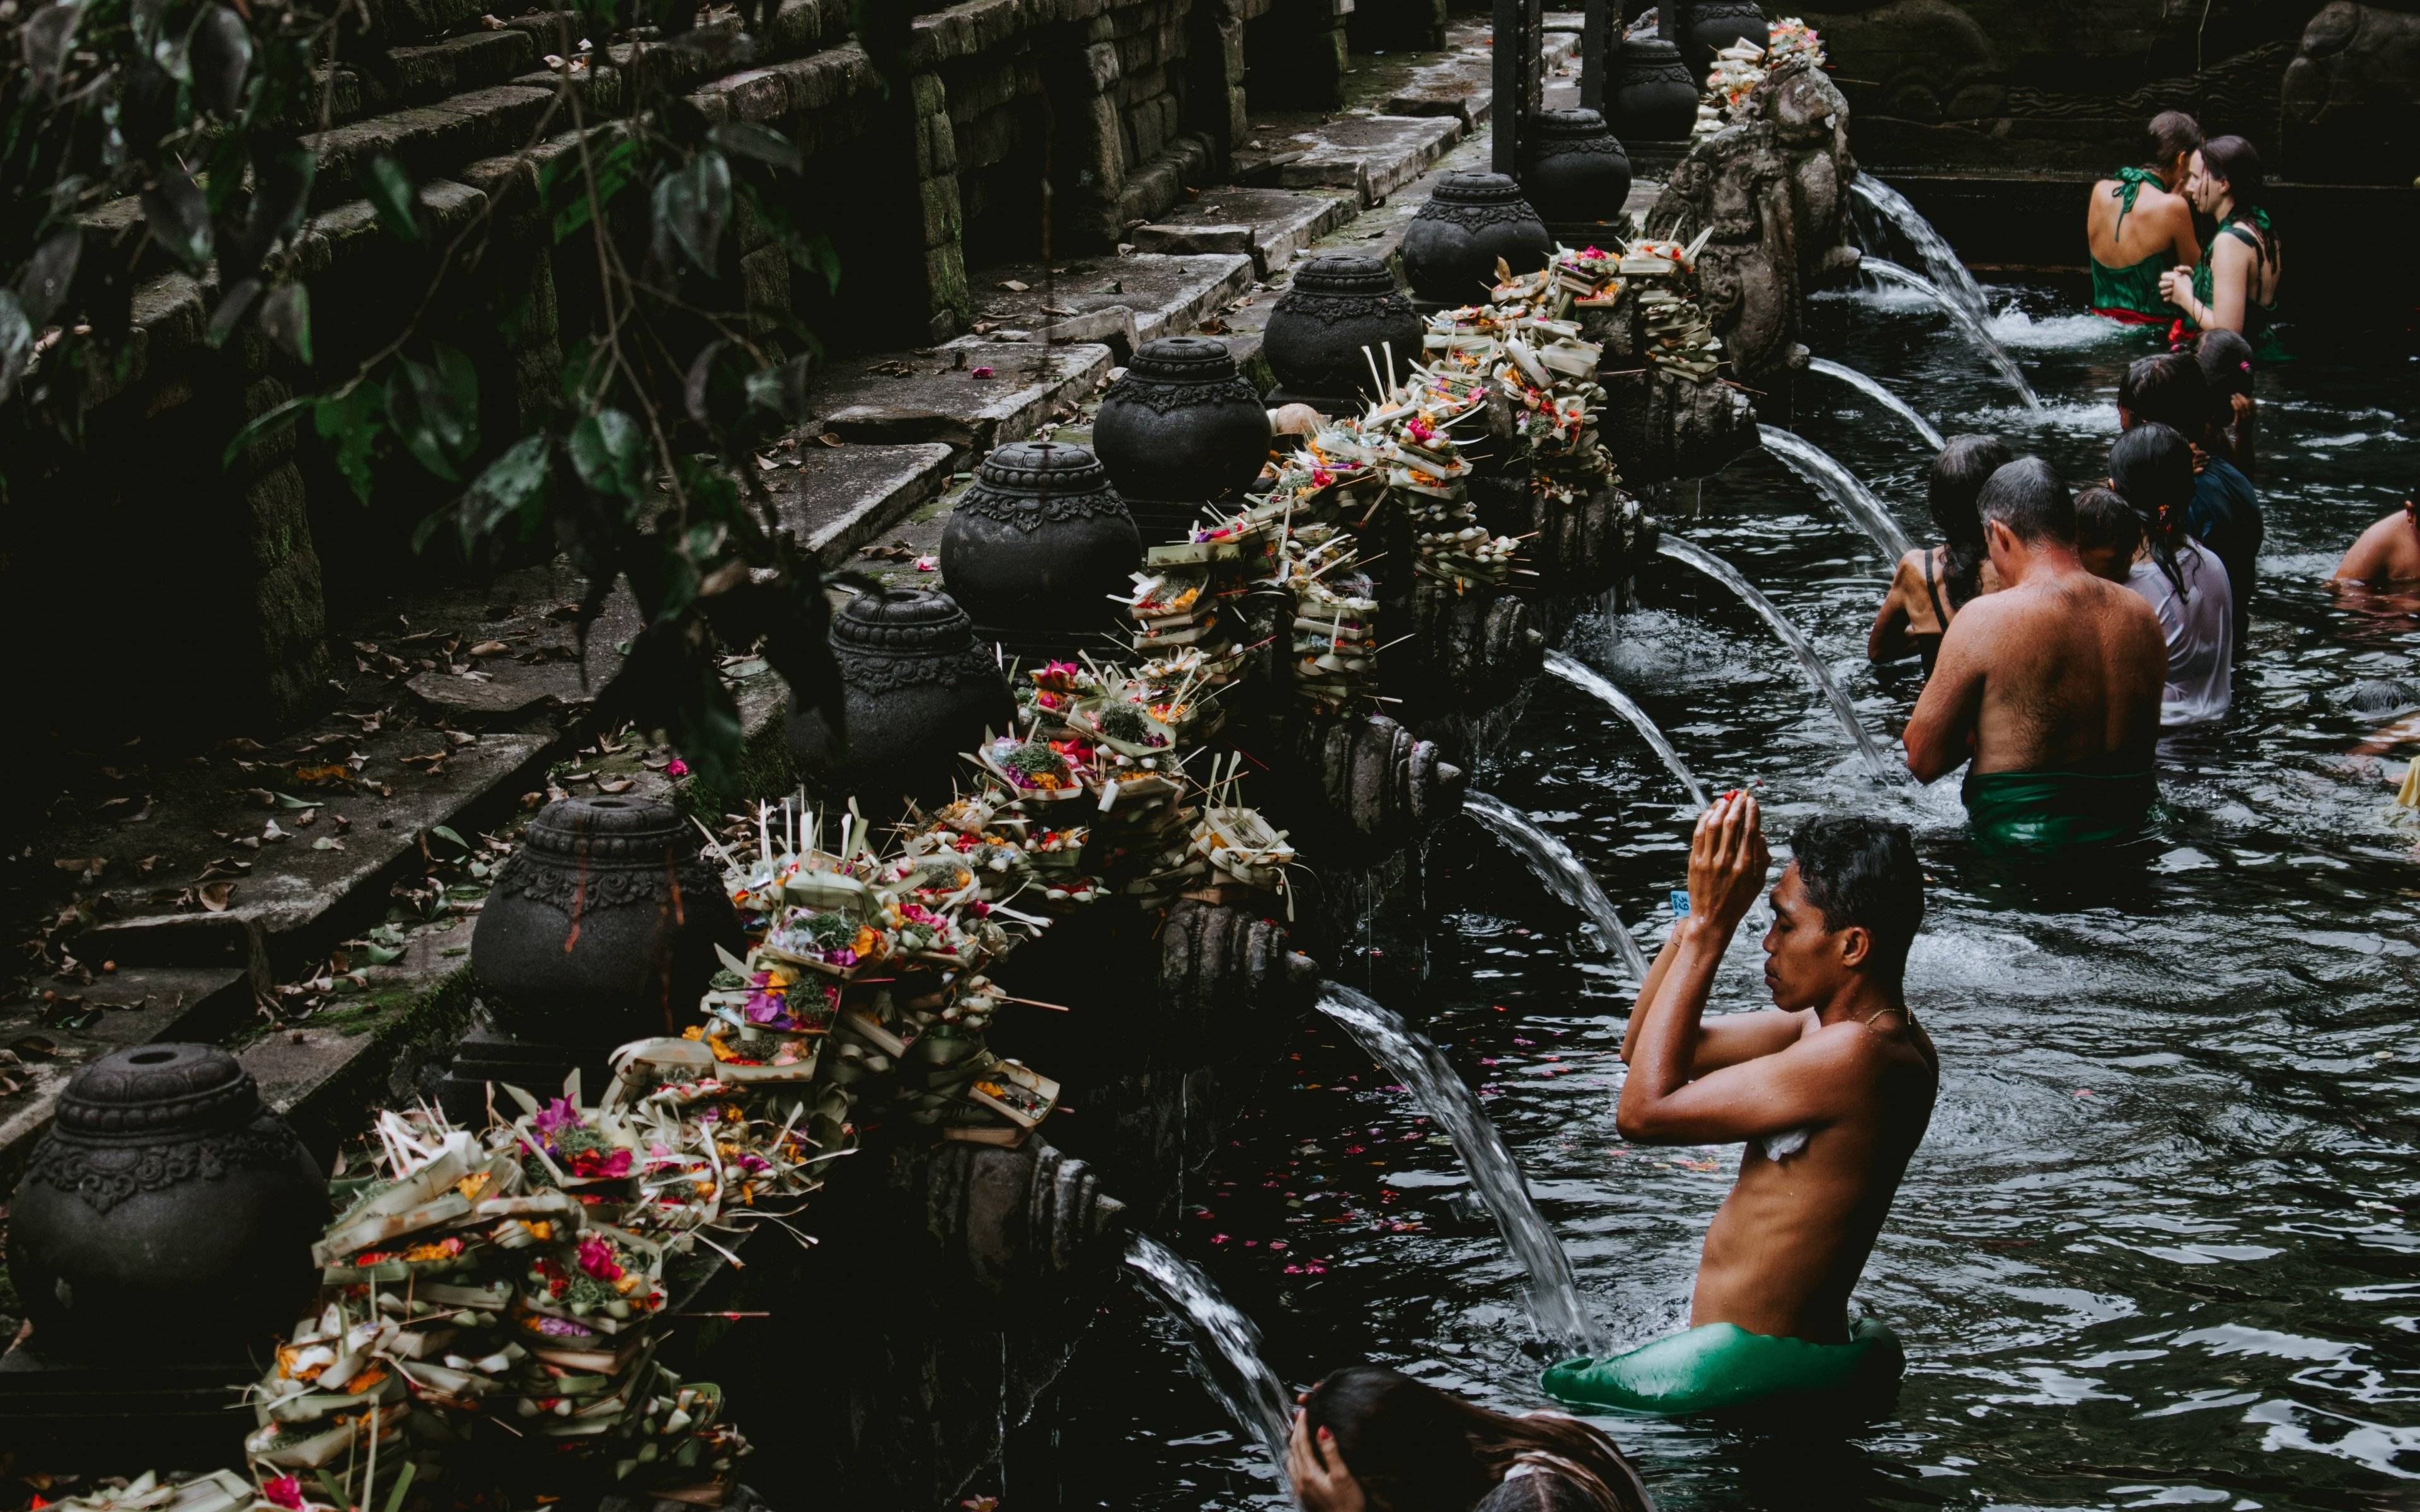 Découverte des alentours d'Ubud, cascade, temples et sources sacrées